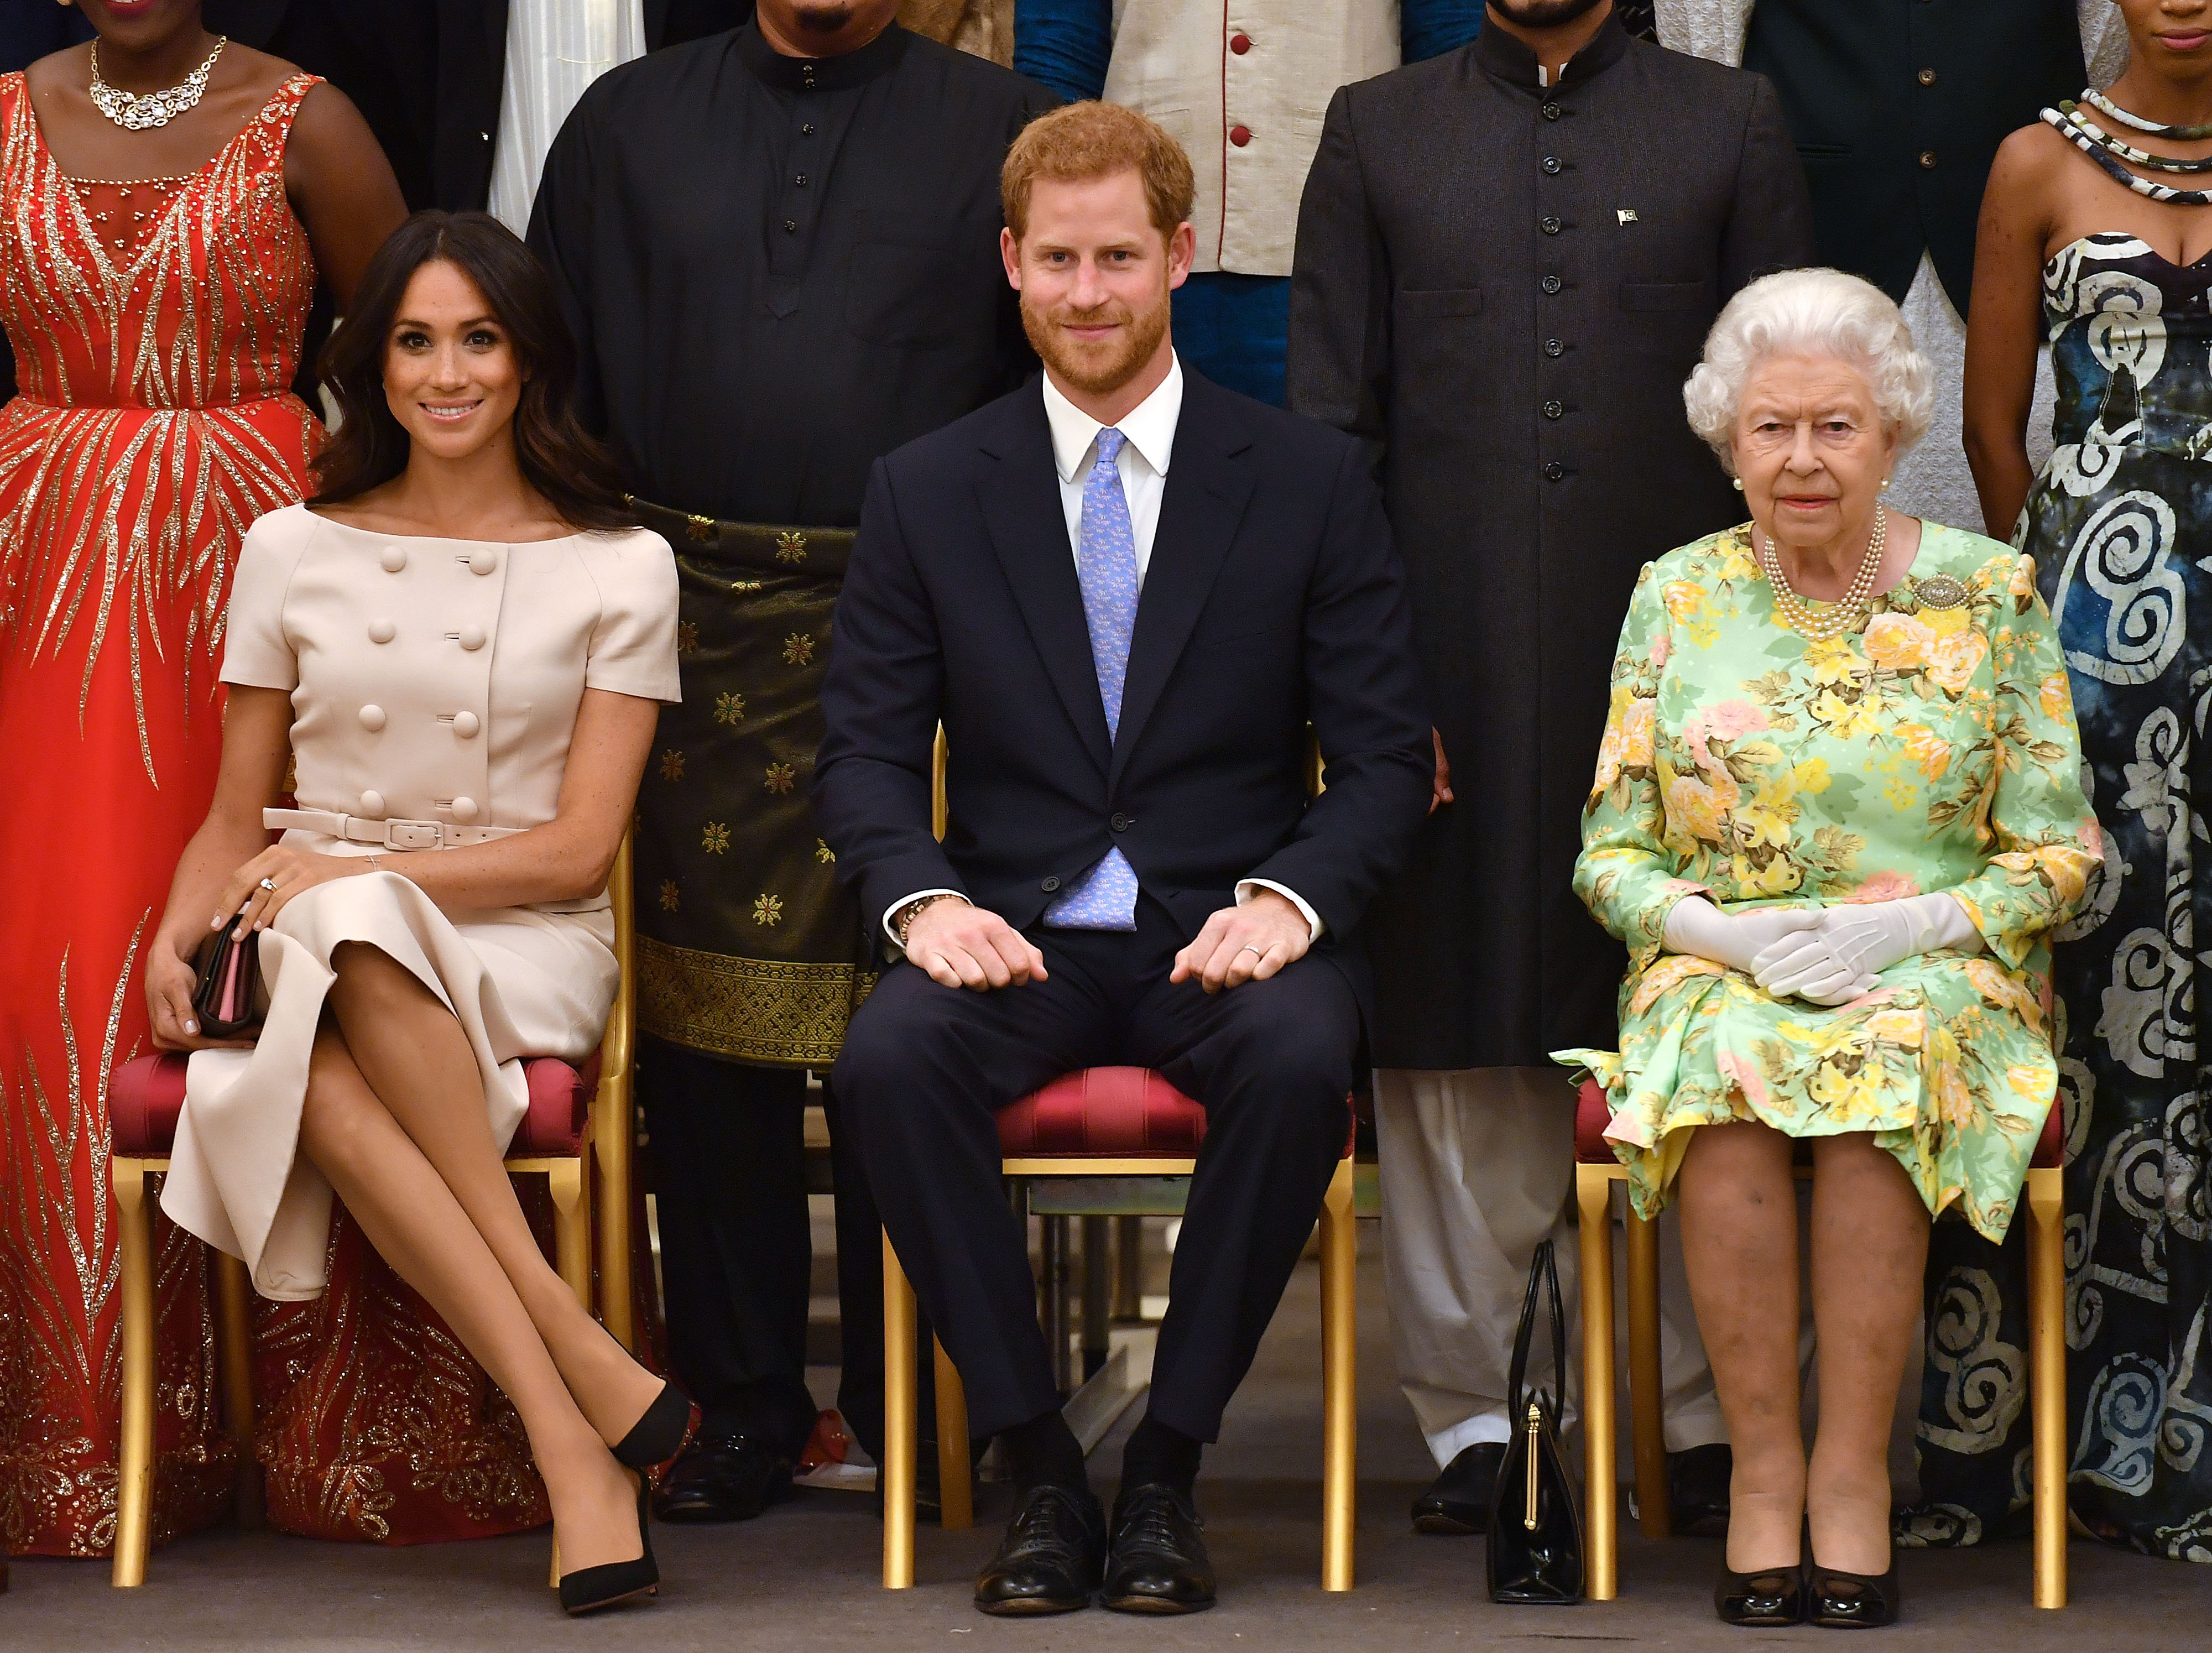 La duquesa Meghan, el príncipe Harry y la reina Elizabeth II en la ceremonia de entrega de premios Queen's Young Leaders en el Palacio de Buckingham, el 26 de junio de 2018 en Londres, Inglaterra. | Foto: Getty Images